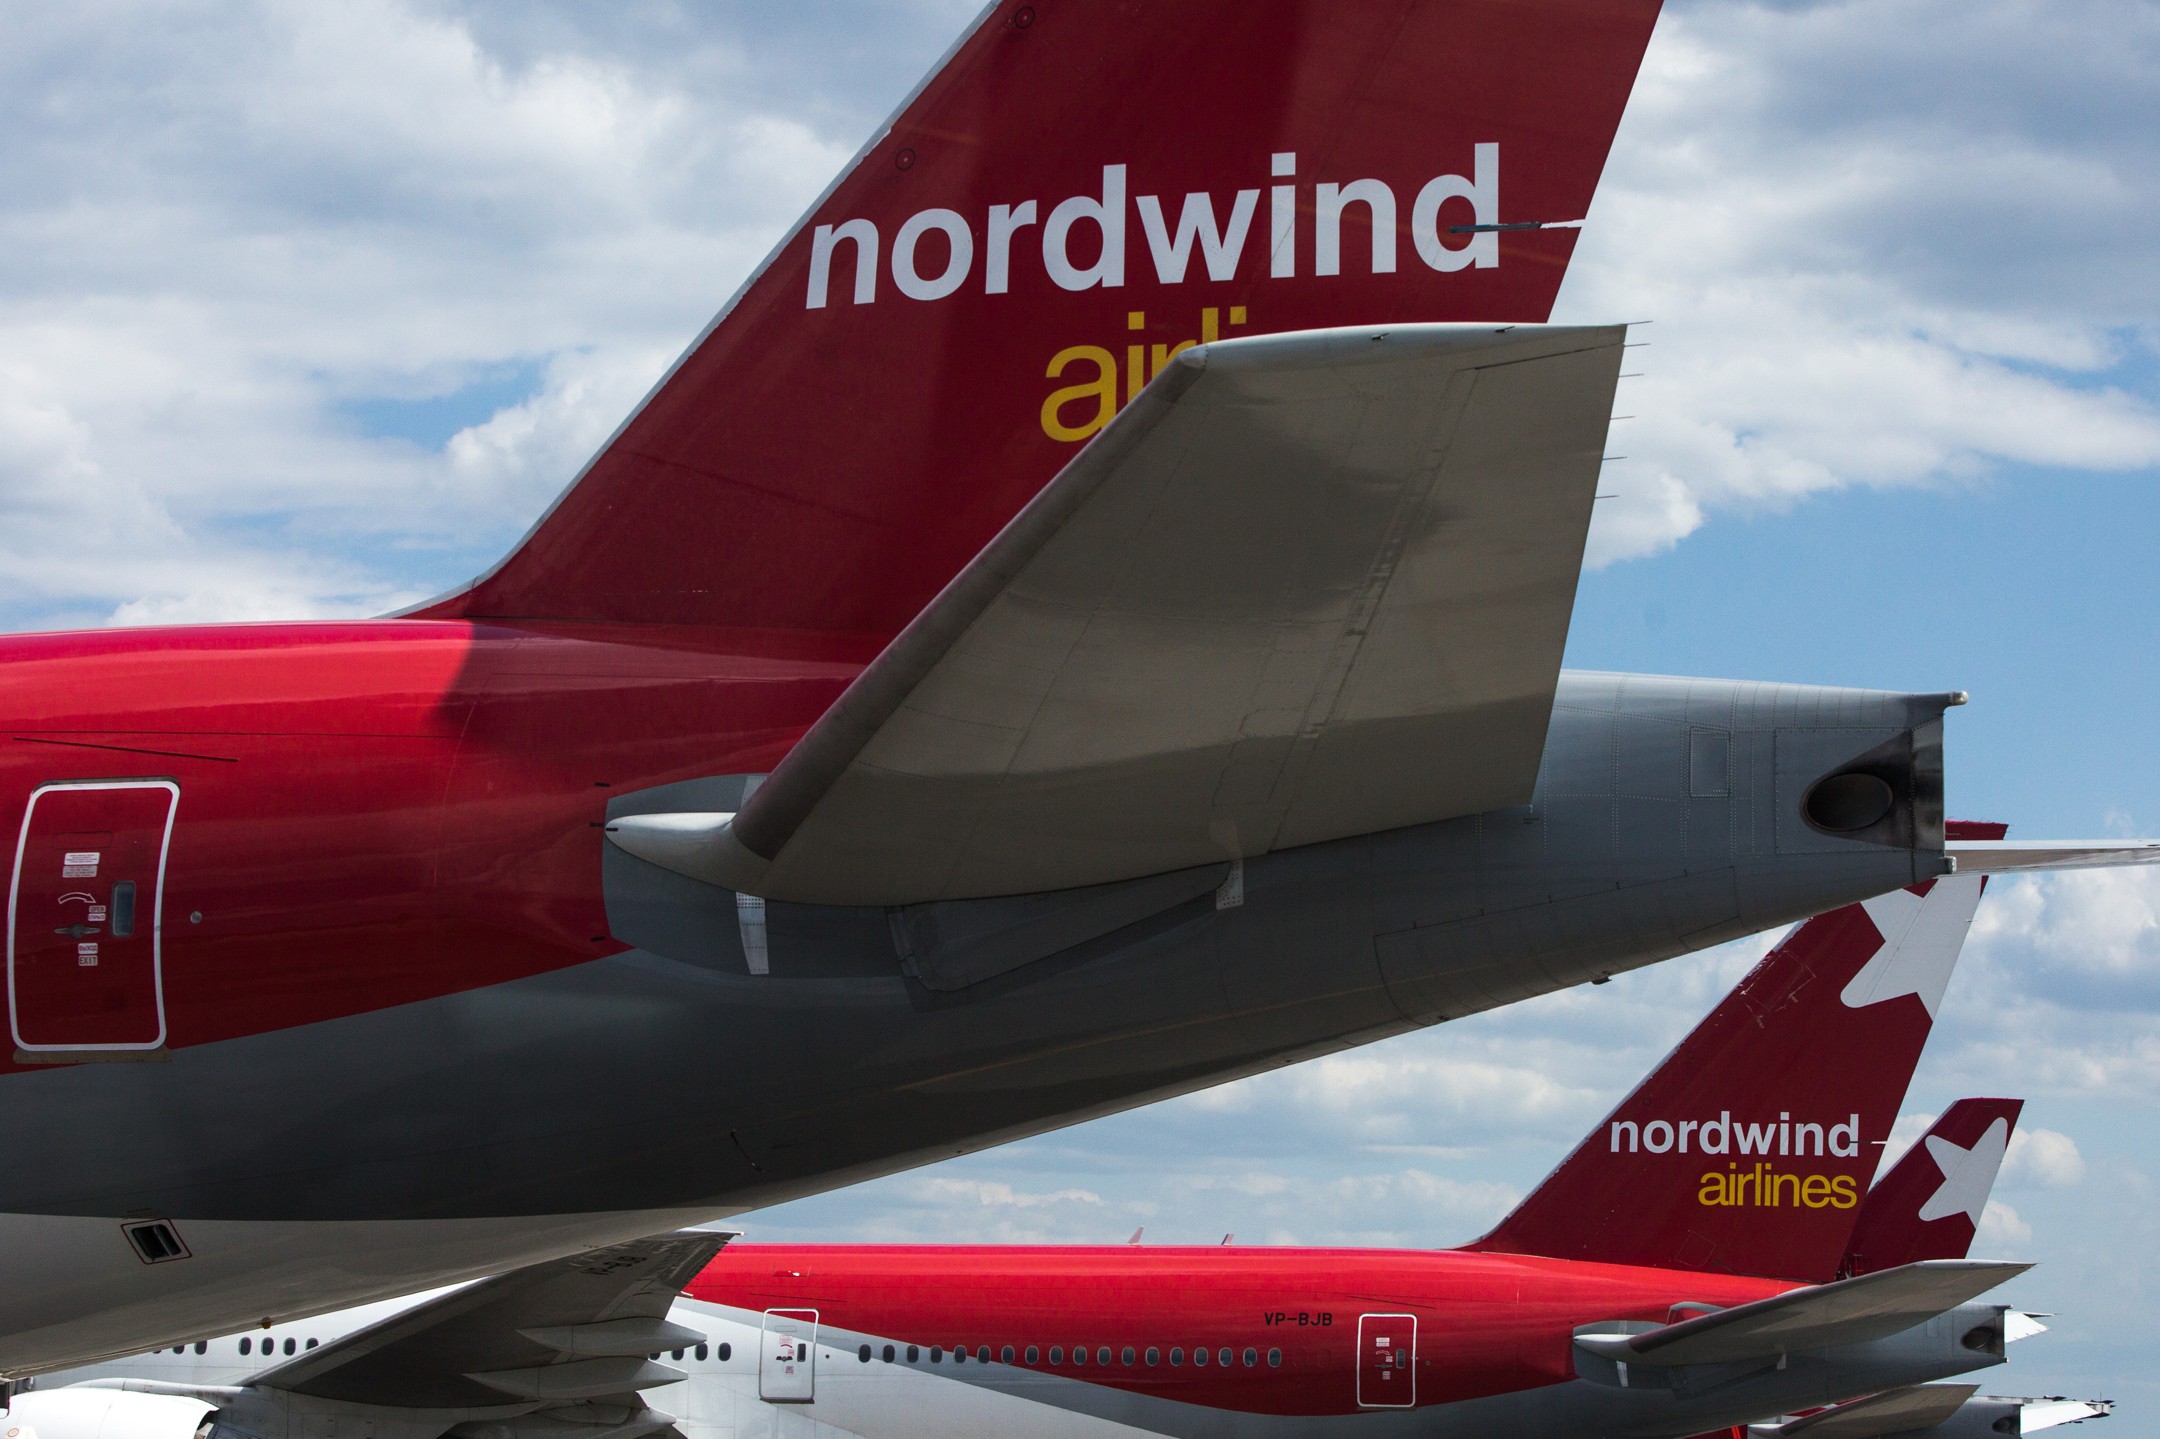 Dailystorm - Самолет авиакомпании Nordwind совершил жесткую посадку в Турции